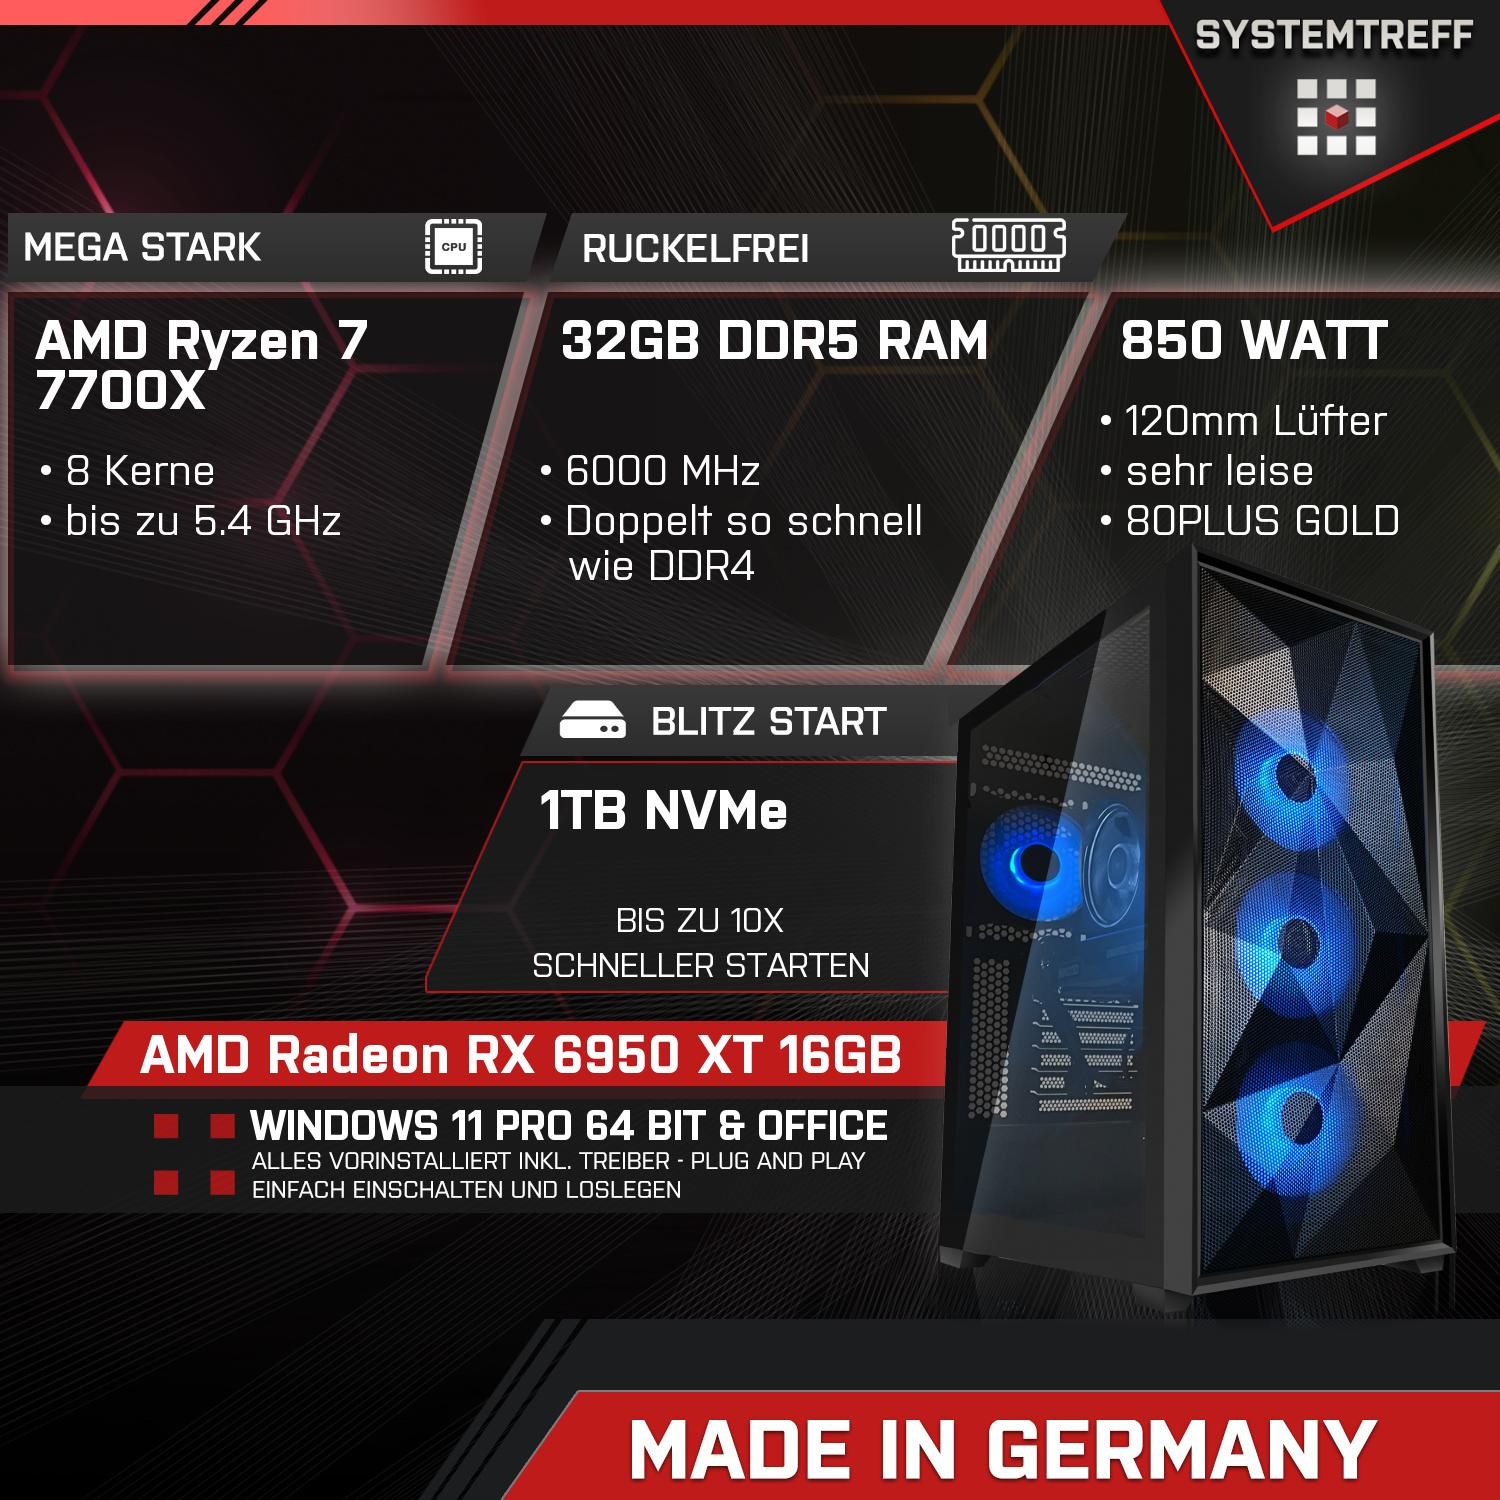 XT 16 AMD Komplett RAM, GB Gaming 7700X, 6950 32 Radeon 1000 GB GB AMD mSSD, PC 7 Ryzen 16GB 7700X SYSTEMTREFF GDDR6, RX Komplett Prozessor, mit